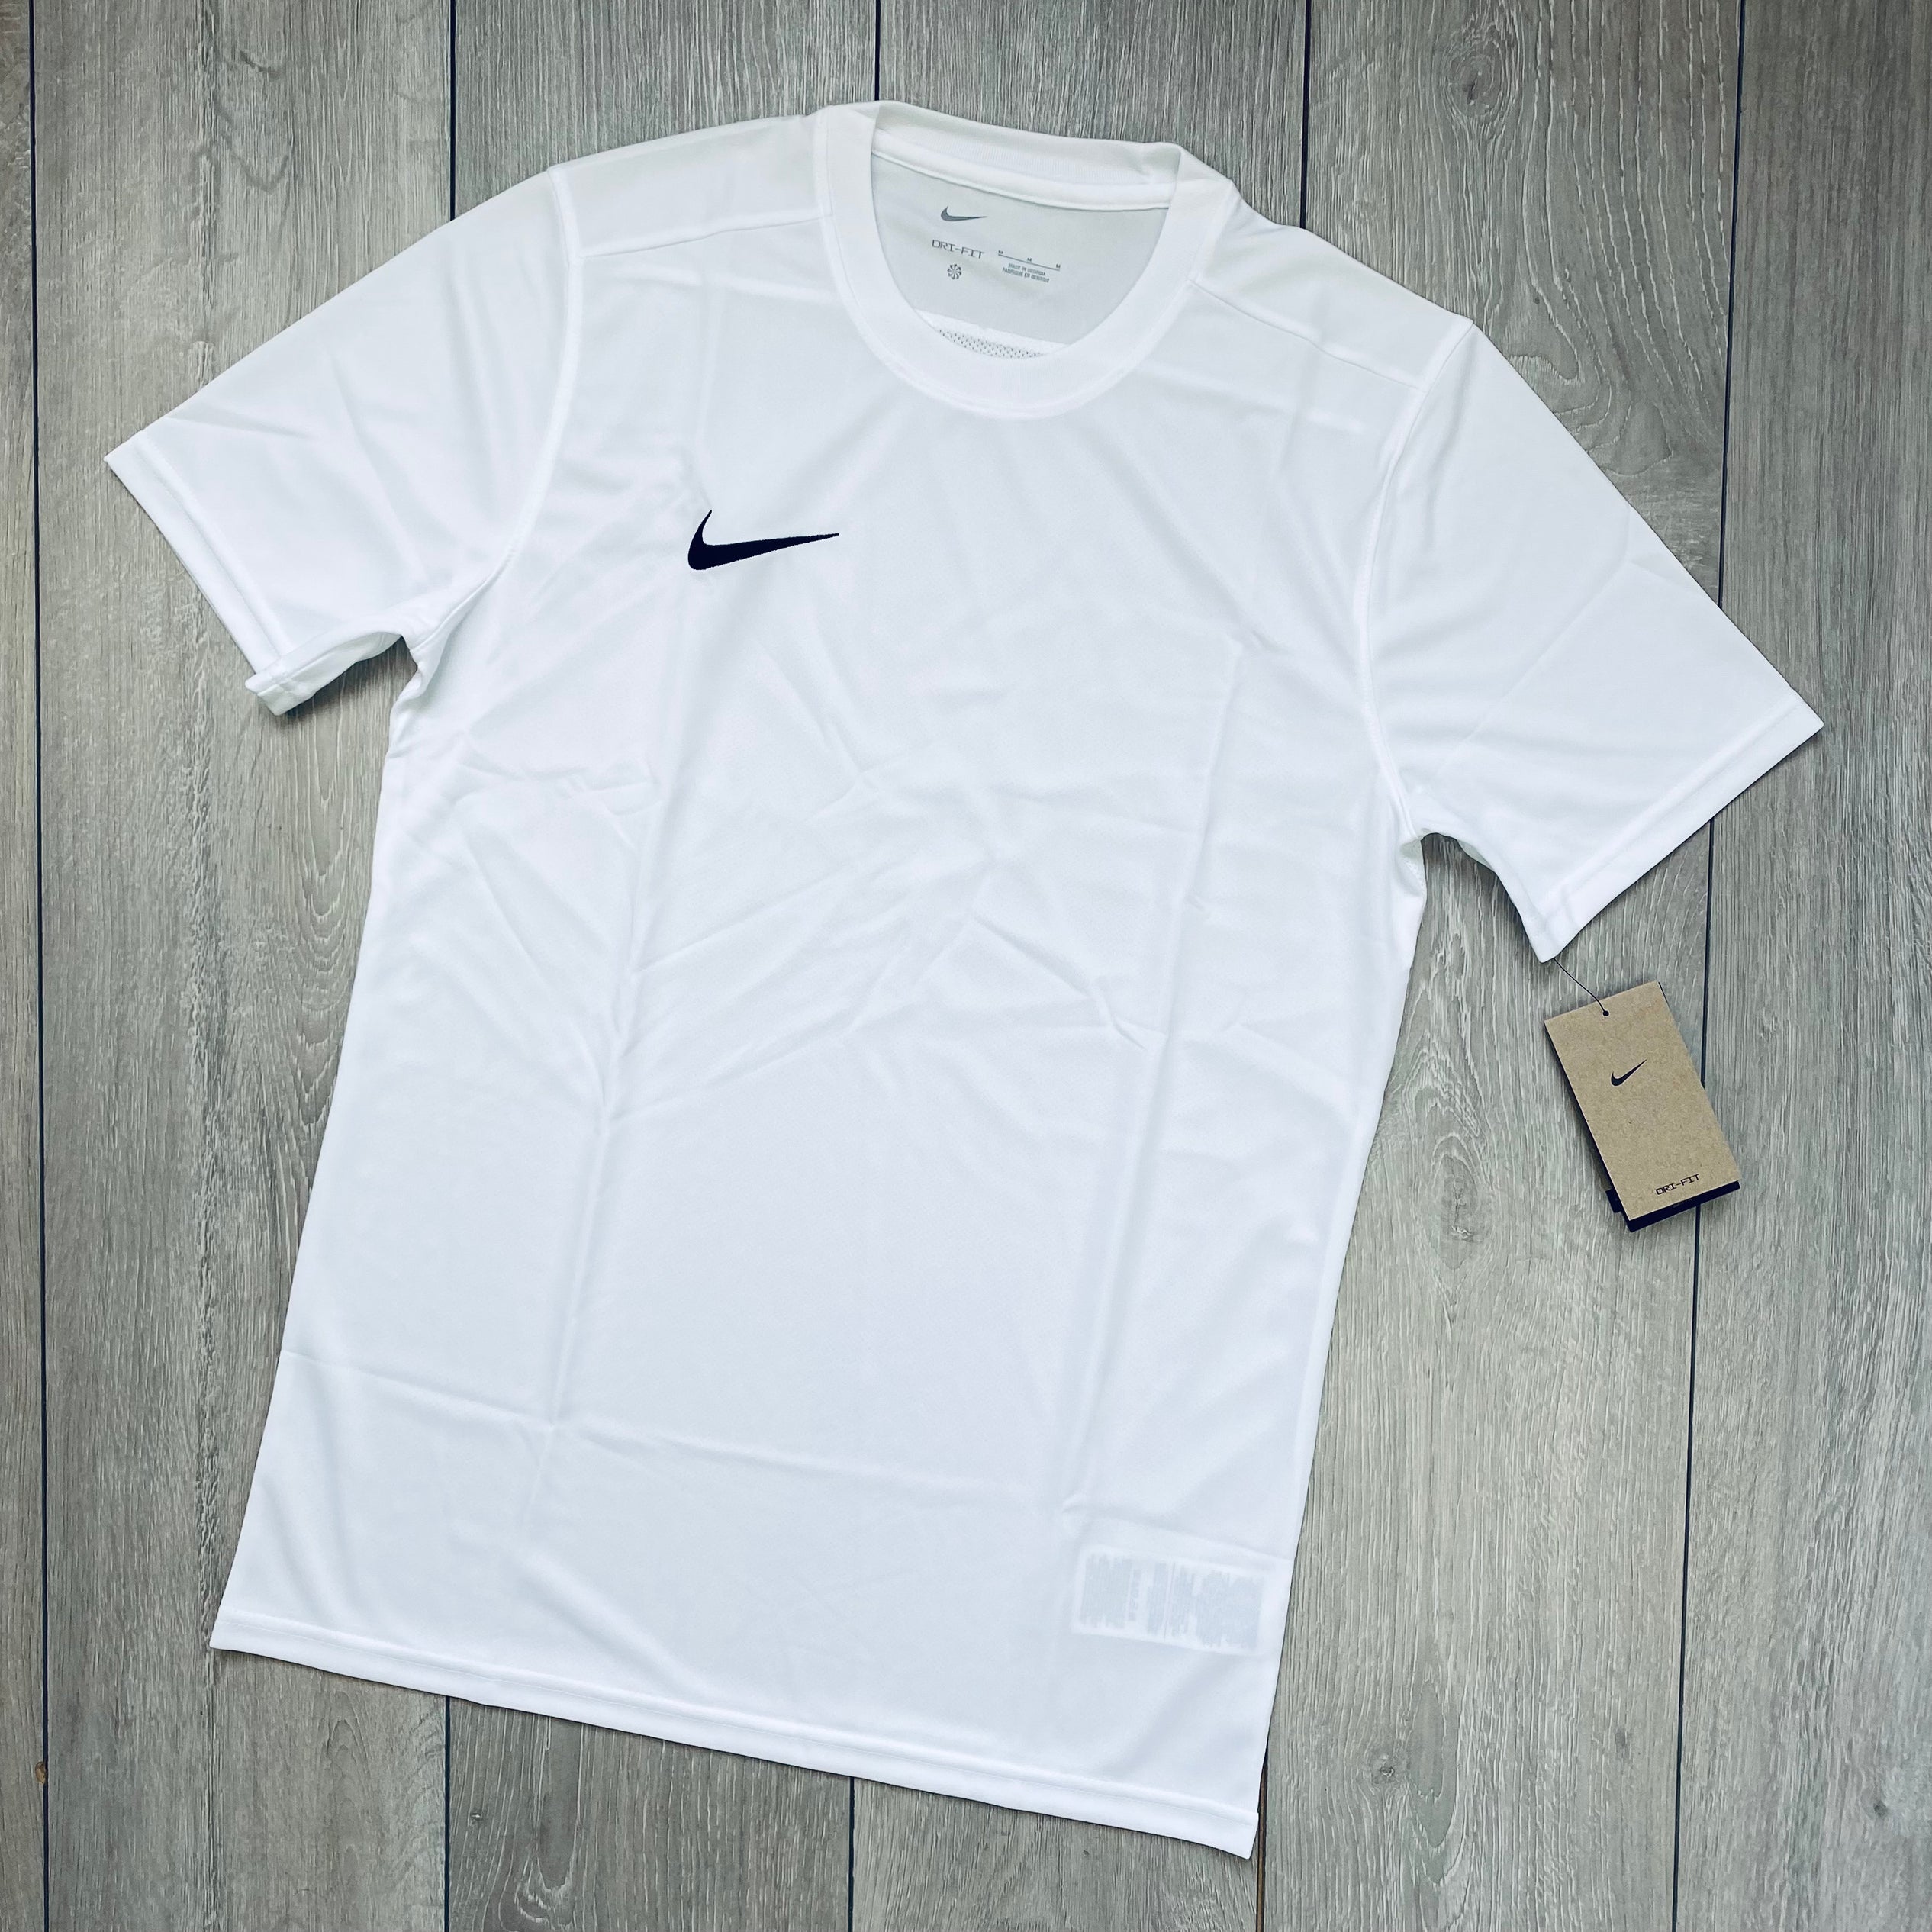 Nike Dri-Fit Set - White/Grey